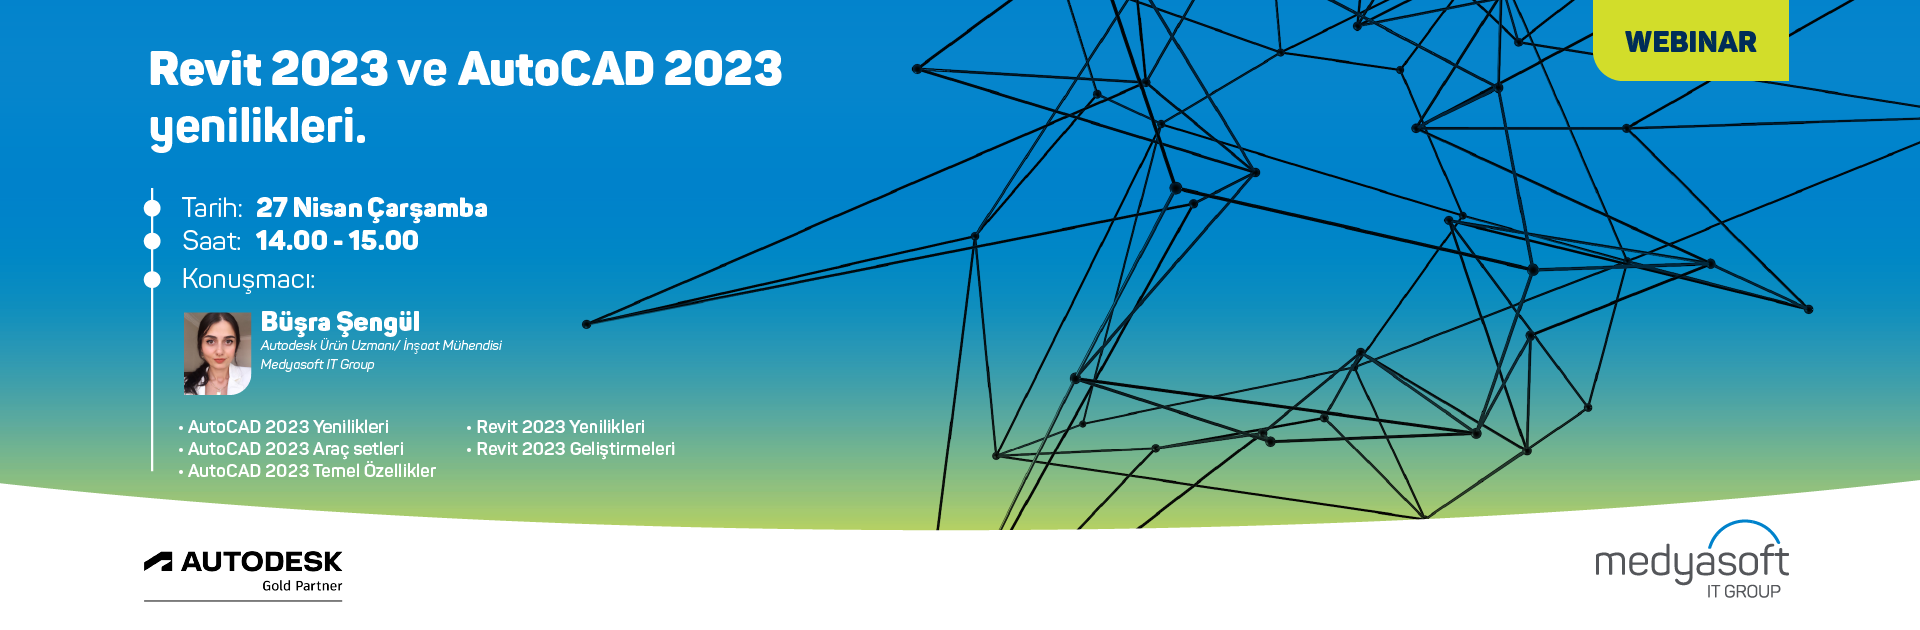 Revit 2023 ve AutoCAD 2023 Yeniliklerini Konuşacağımız Webinarımıza Davetlisiniz